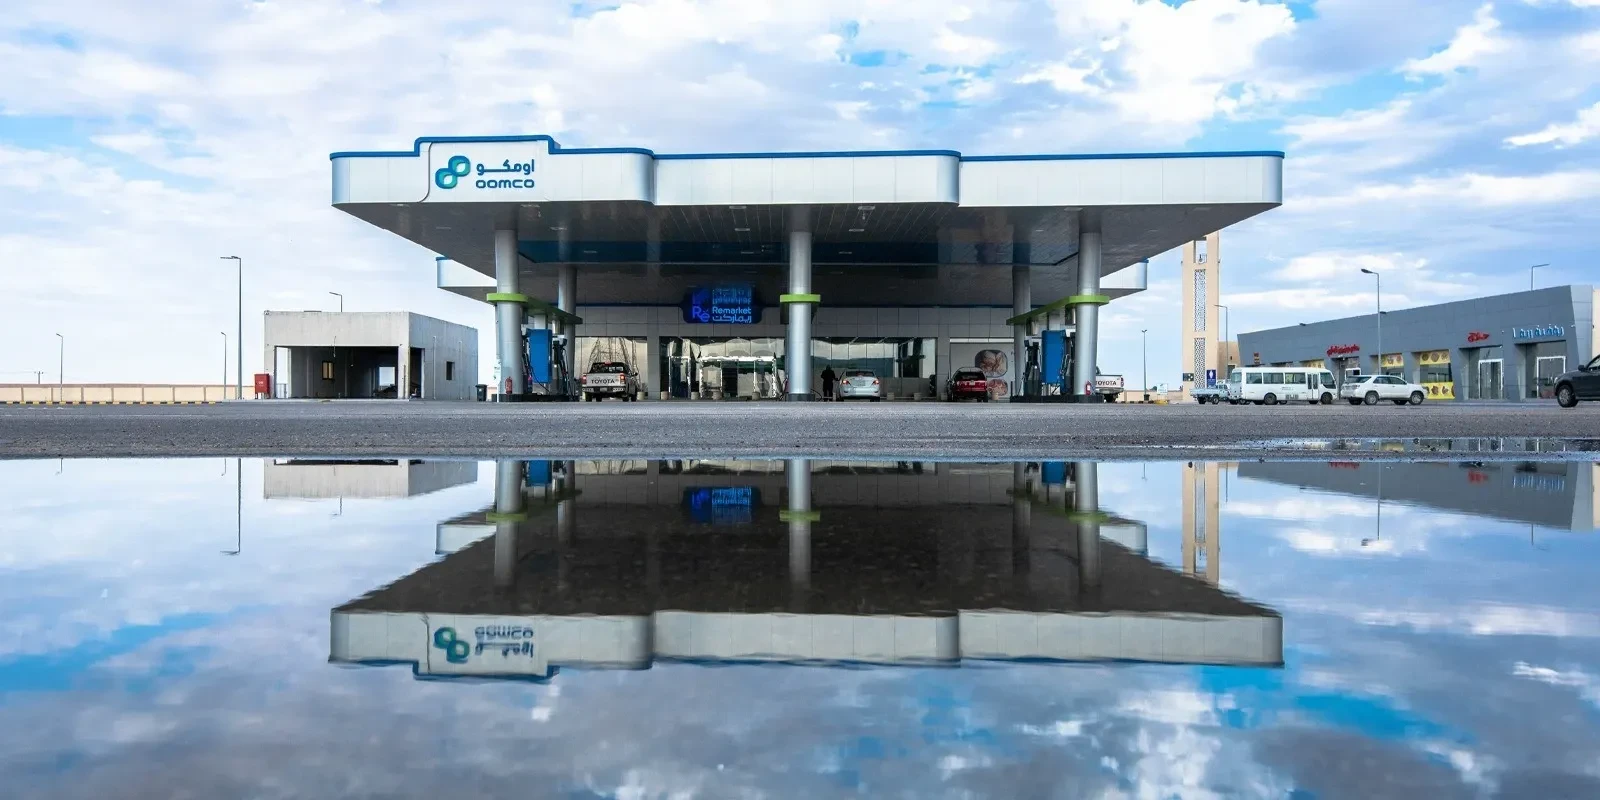 OMAN OIL MARKETING COMPANY OPENS 7TH KSA SERVICE STATION IN MECCA